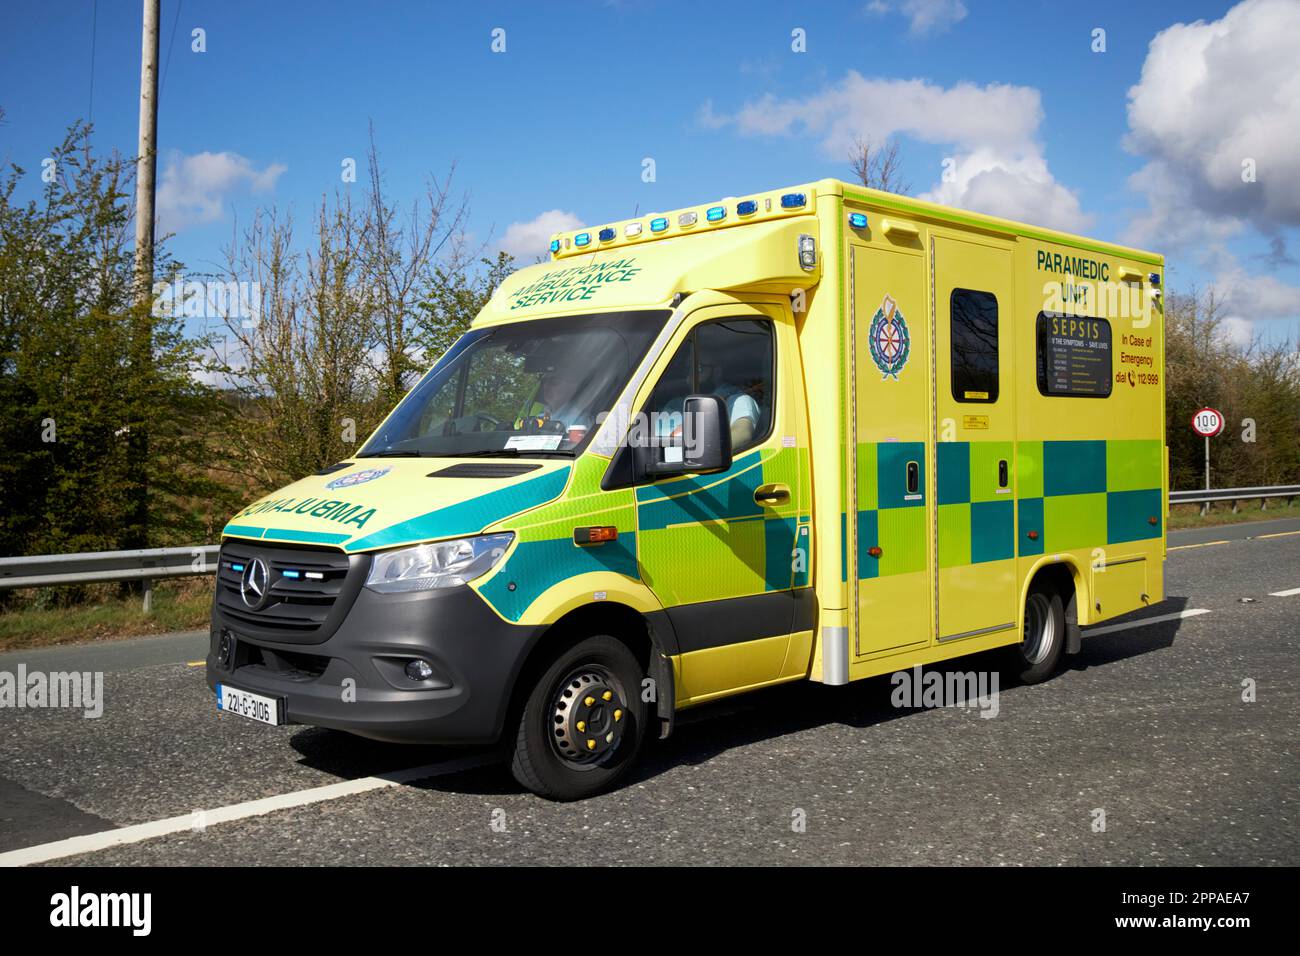 National Ambulance Service Sanitäter Notfall Ambulanz Fahrzeug Teil des Präsidenten bidens Autokolonne auf offiziellem Staatsbesuch in Irland am N5. Outsi Stockfoto